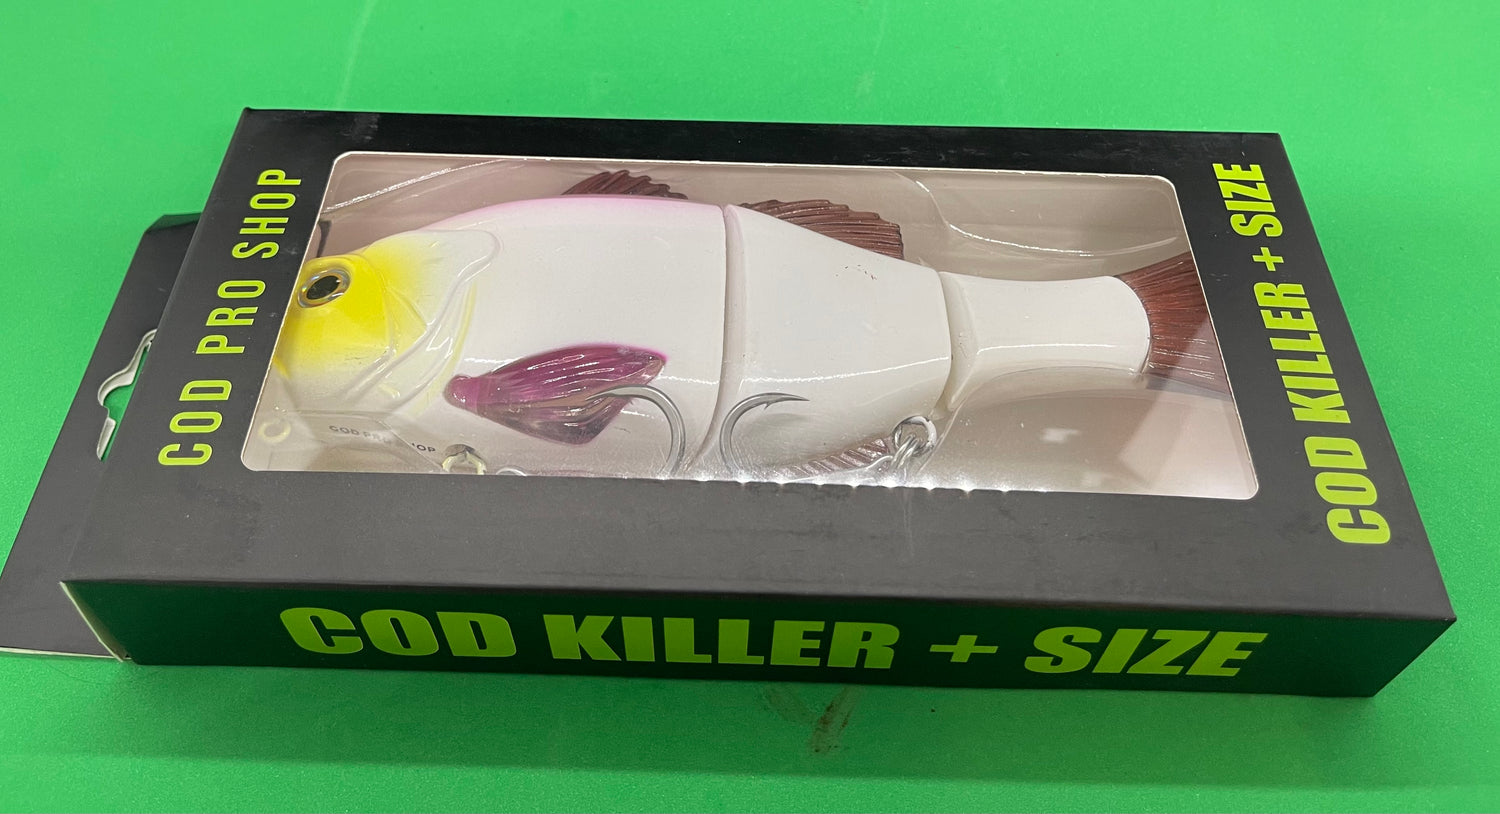 Cod Killers range